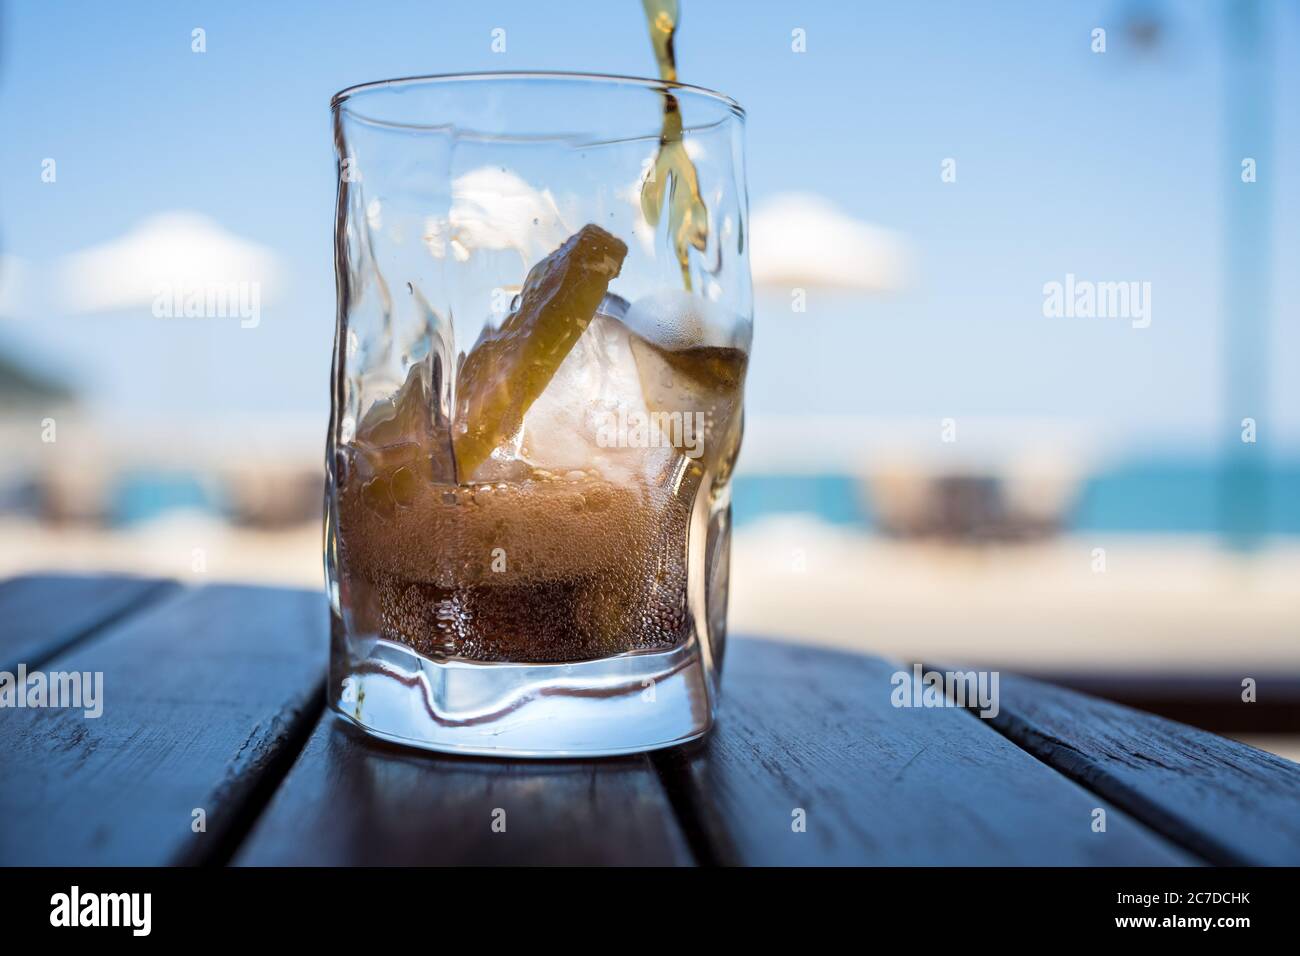 Une boisson non alcoolisée est versée dans un verre de glace et de citron, en arrière-plan vous voyez des parasols, le ciel et la plage. Banque D'Images